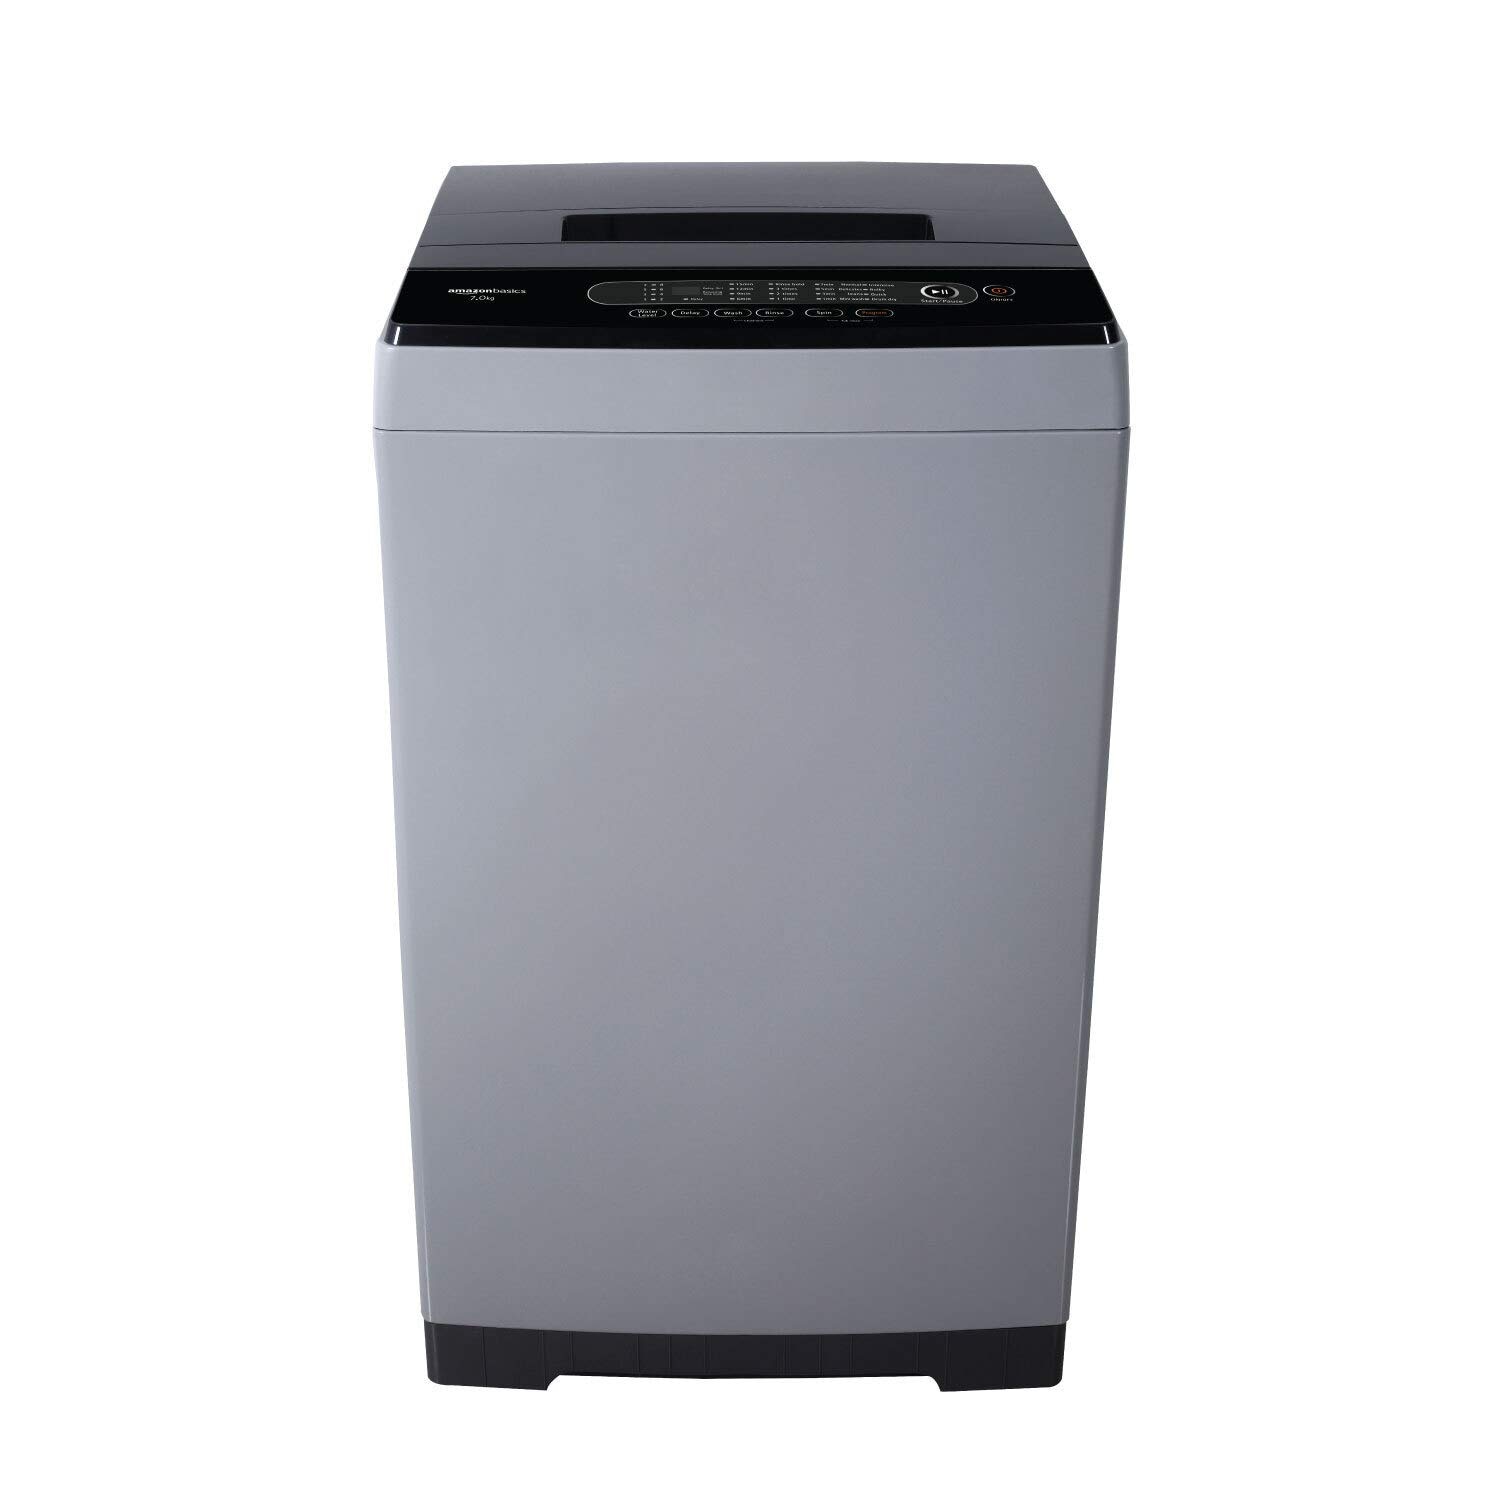 Amazon Deal: होम अप्लायंस पर बंपर सेल, इन सभी वॉशिंग मशीन पर मिल रहा है 50% तक का डिस्काउंट